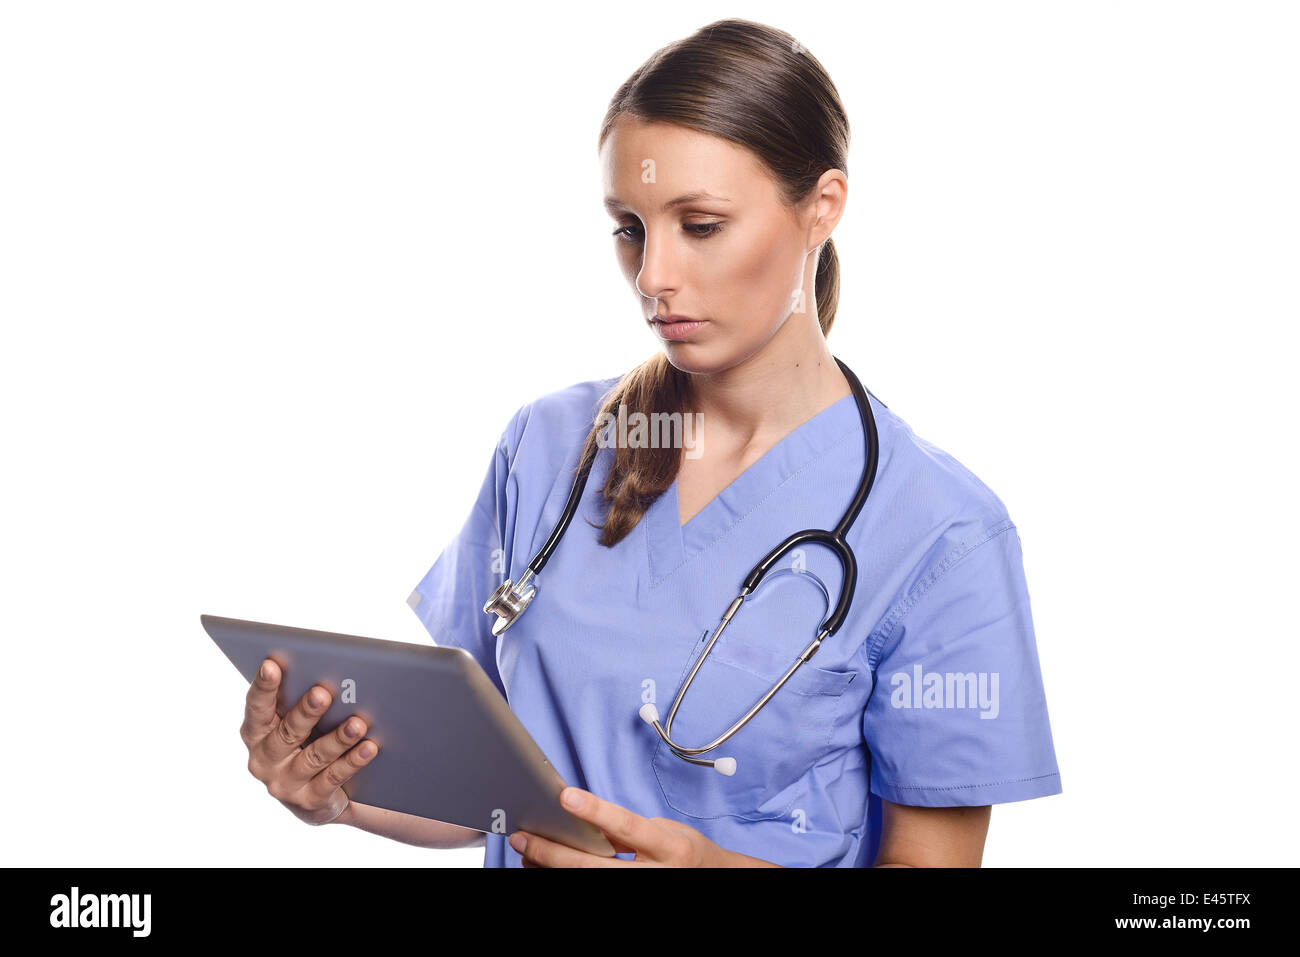 Giovani femmine infermiere o medico indossando blue scrubs lavorando su un computer tablet, isolato su bianco, il concetto di tecnologia Foto Stock